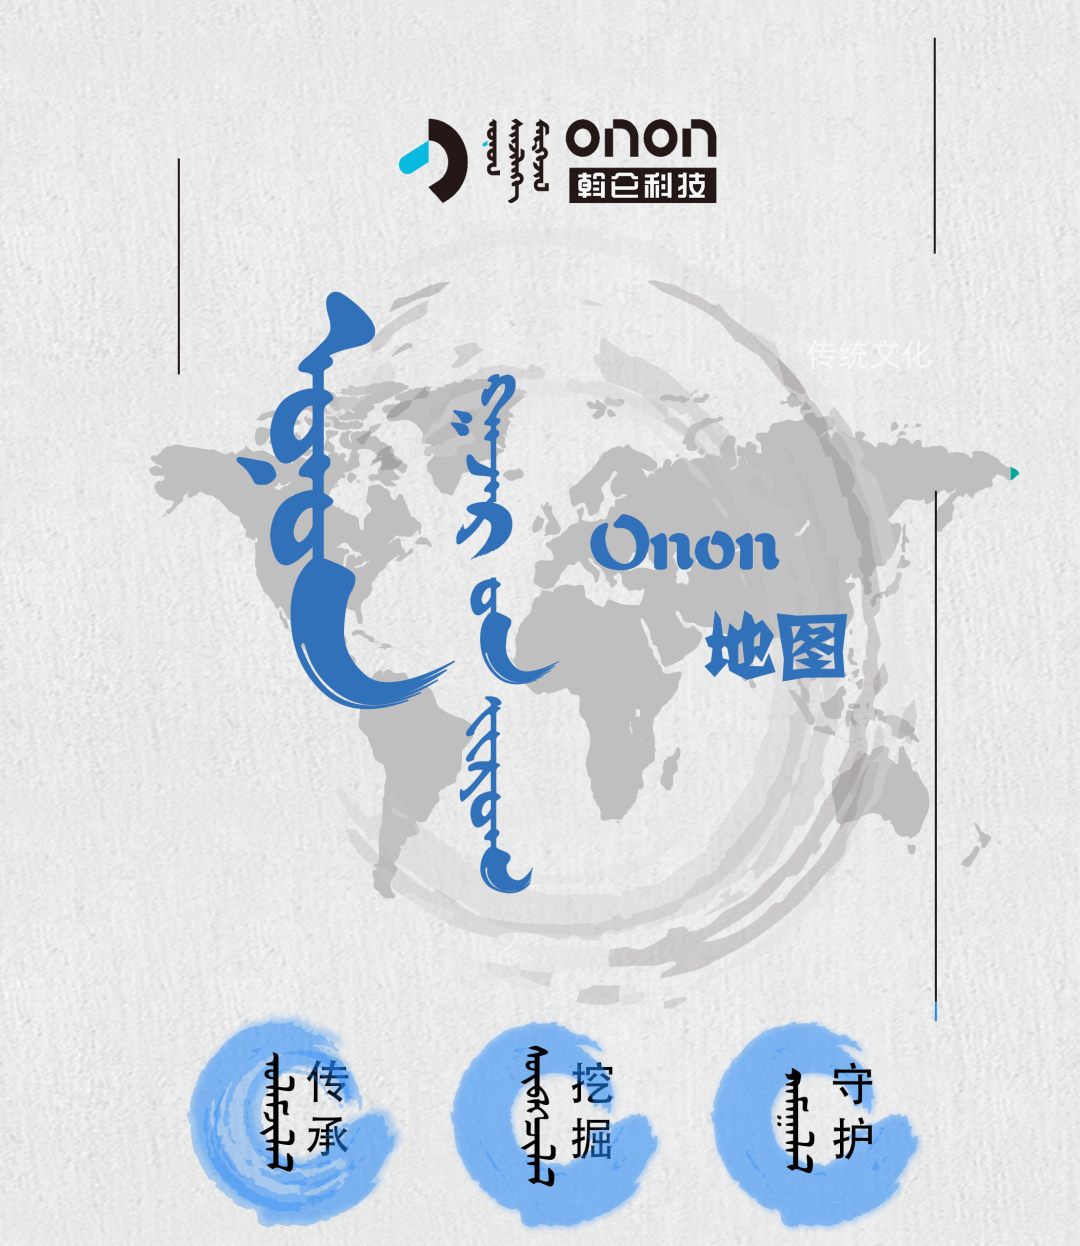 认识下，我是Onon地图！ᠤᠨᠤᠨ ᠭᠠᠵᠠᠷ ᠤᠨ ᠵᠢᠷᠤᠭ ᠲᠠᠢ ᠲᠠᠨᠢᠯᠴᠠᠶ᠎᠎ᠠ